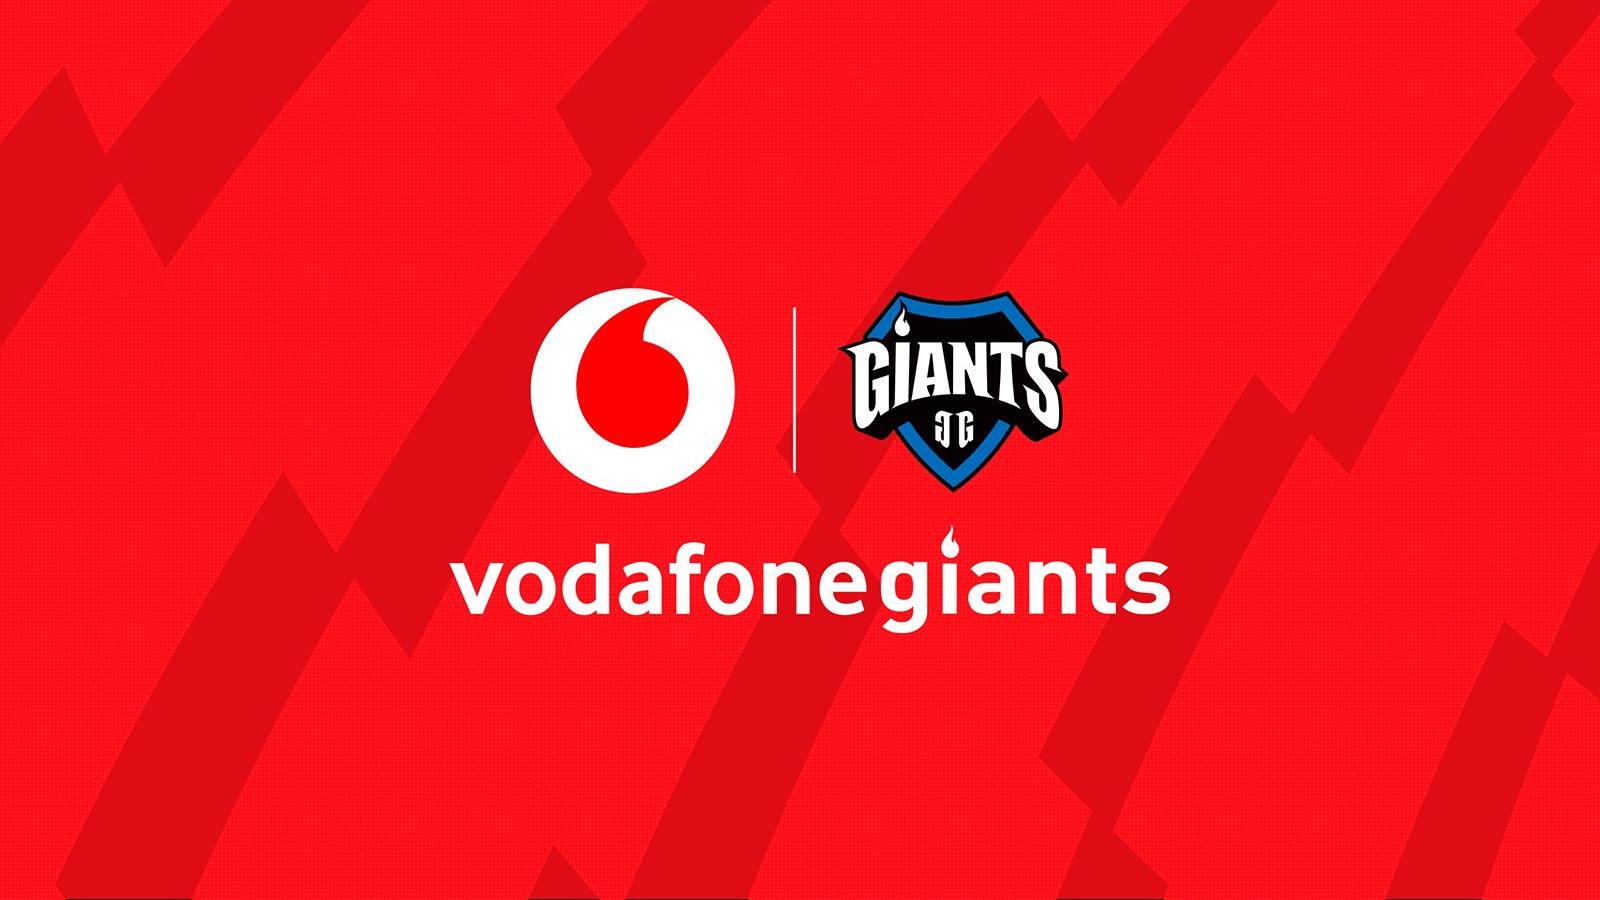 Vodafone Giants